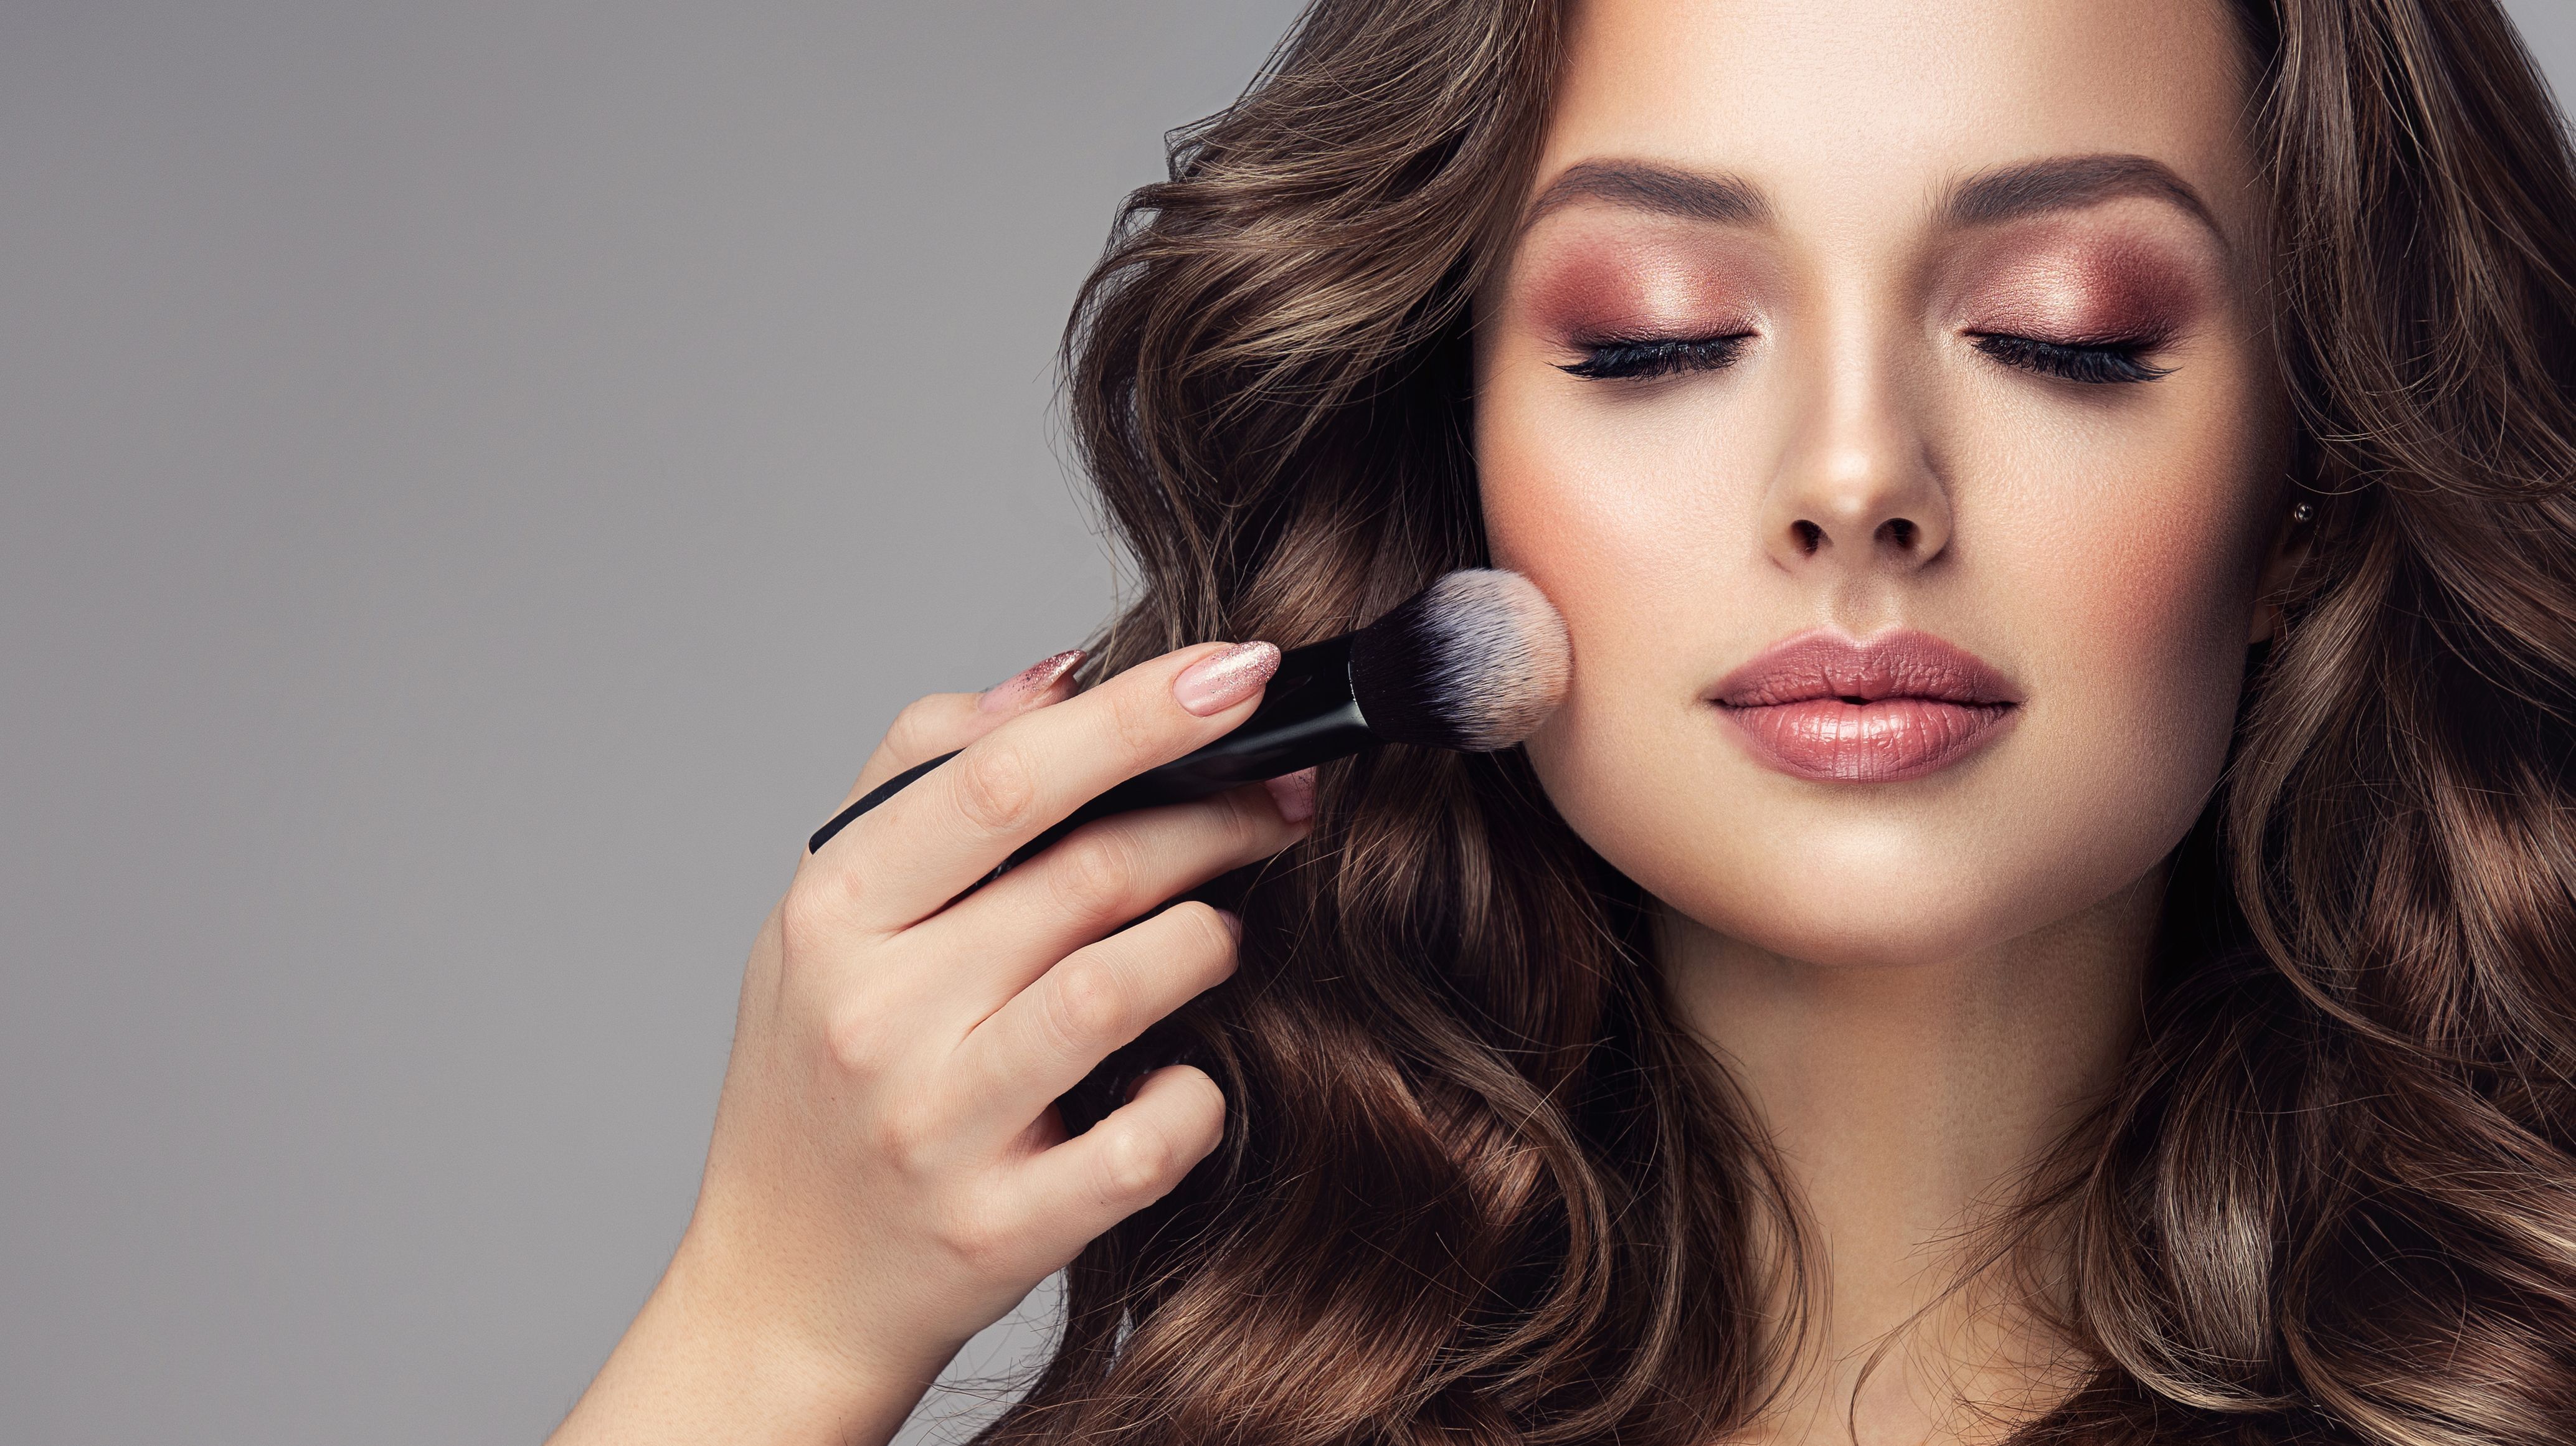 Indtil nu Misforstå prinsesse Airbrush Makeup V/S HD Makeup: What works for you?